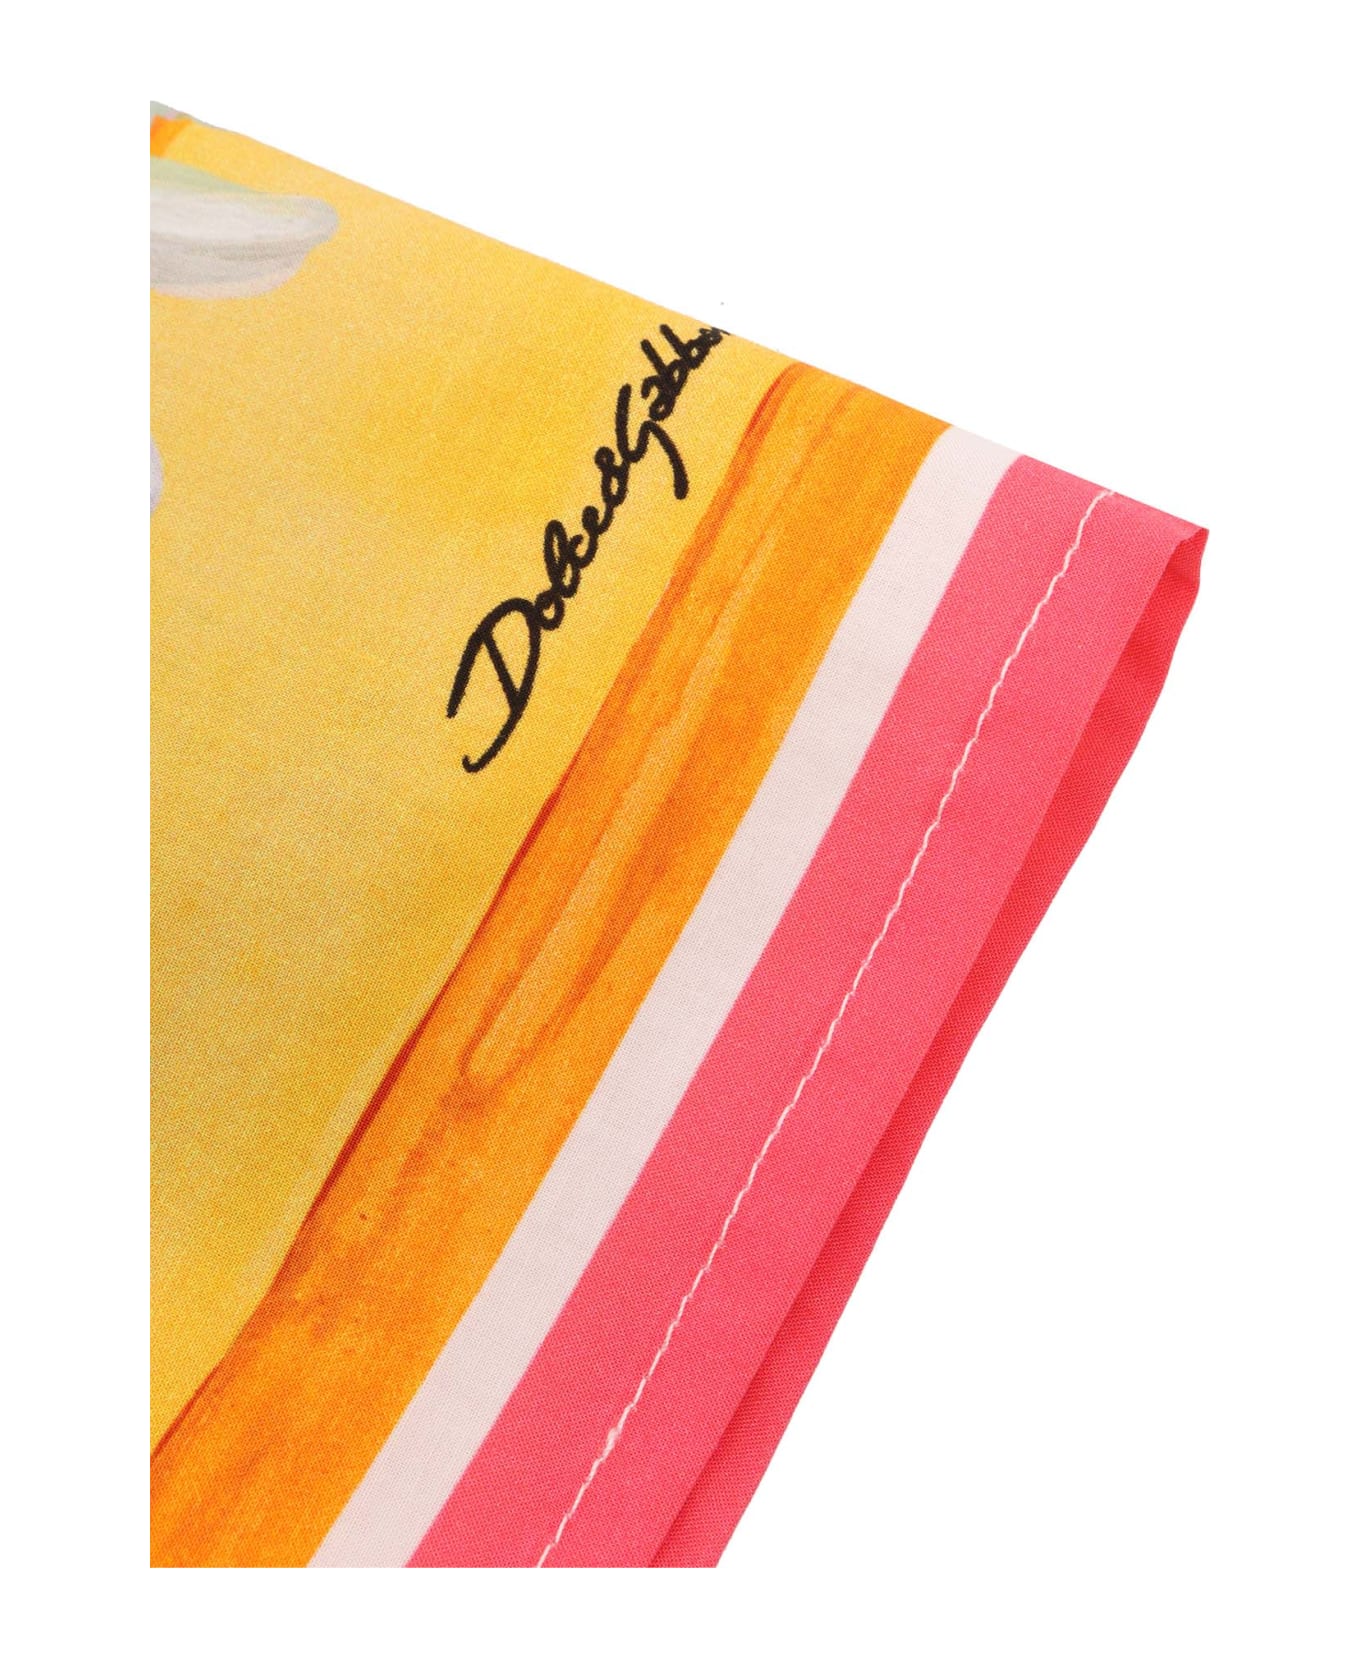 Dolce & Gabbana D&g Floral Shirt - YELLOW シャツ